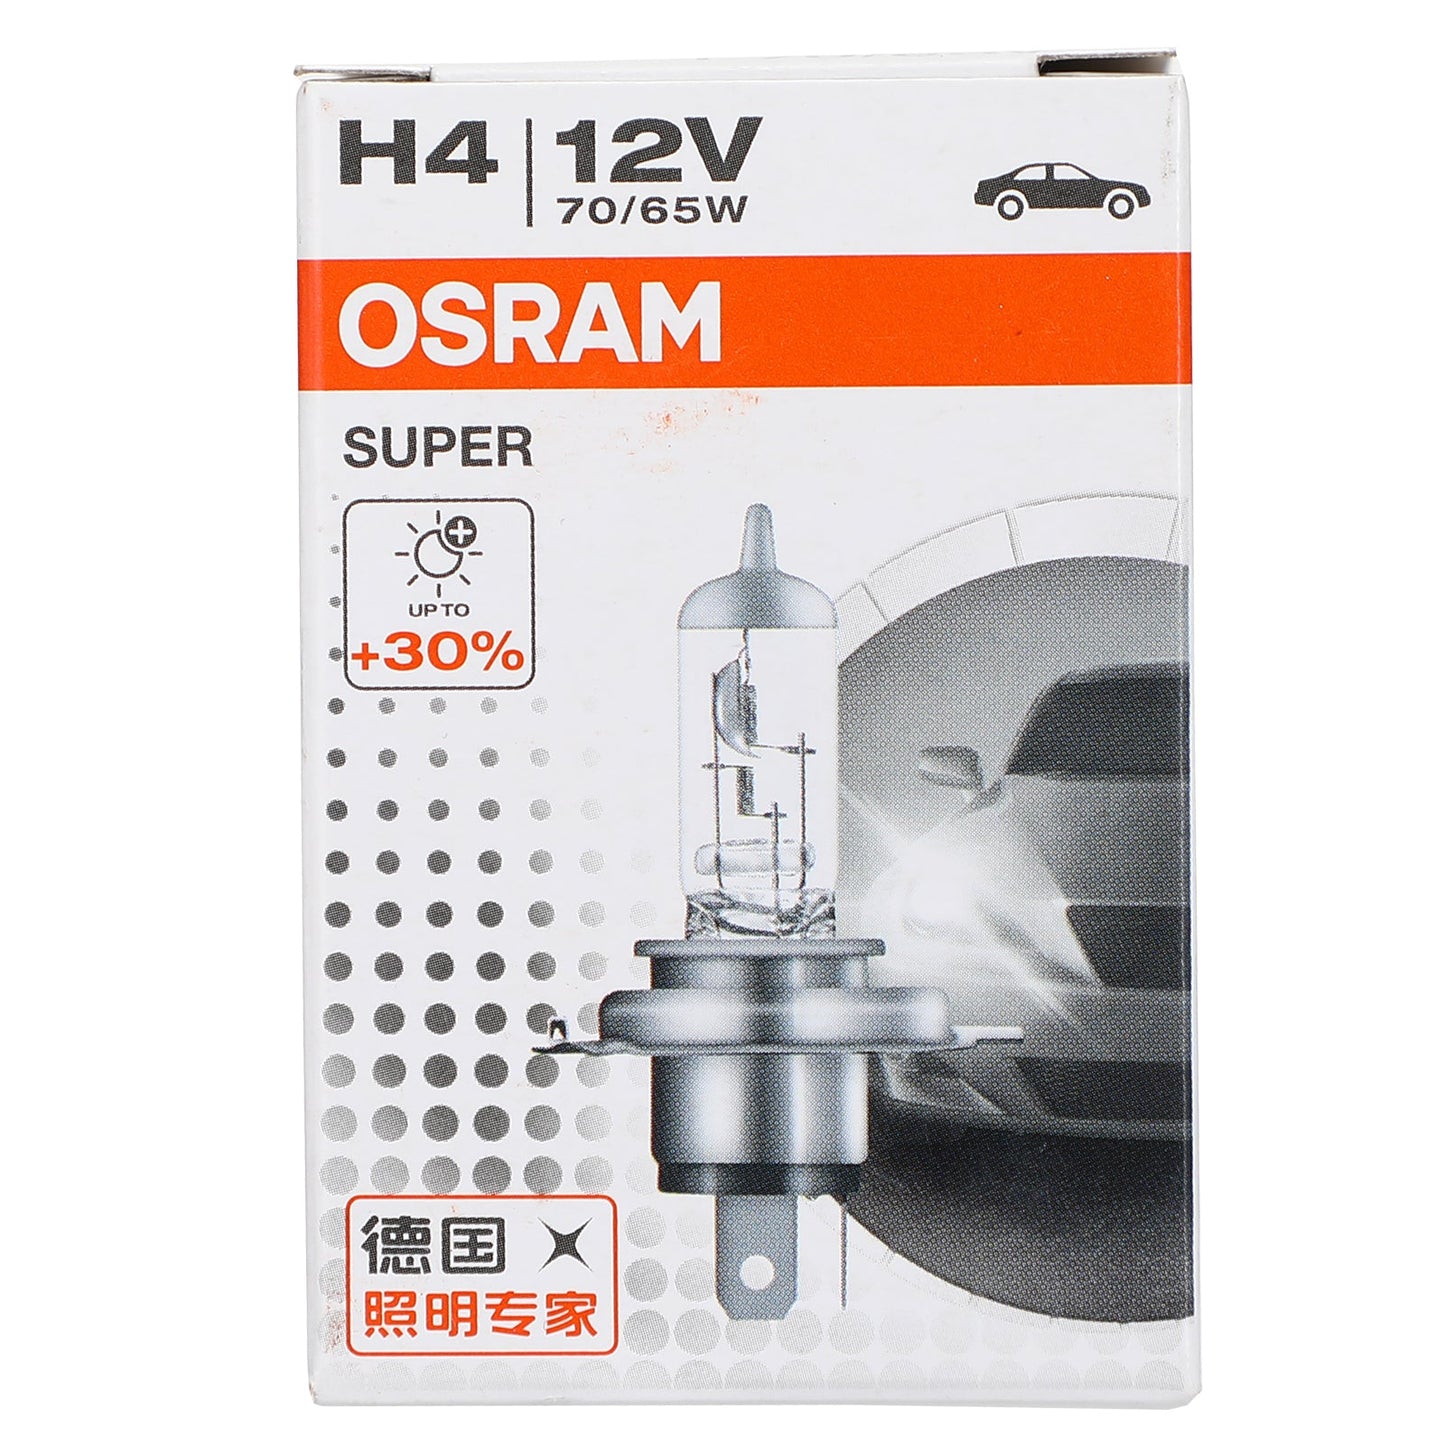 H4 For OSRAM Car Headlight Lamp Super +30% More Light P43t 12V70/65W 62281